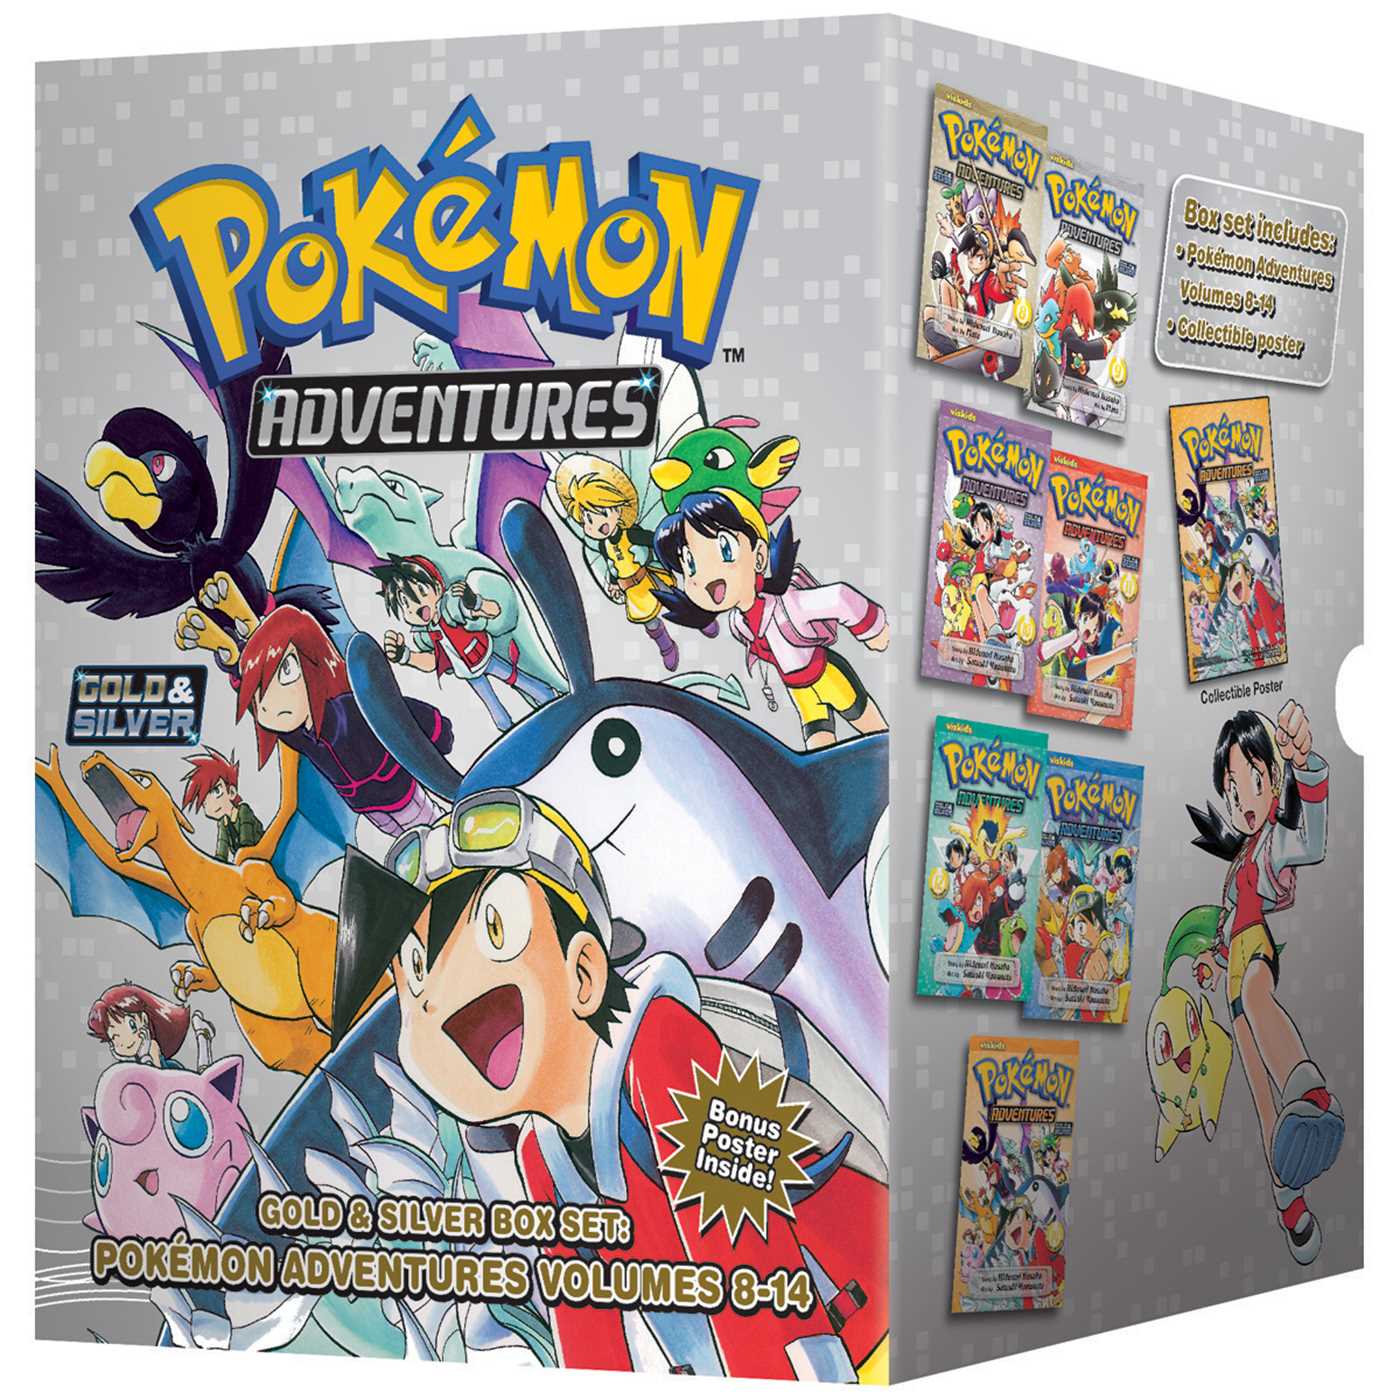 Pokémon Adventures Gold & Silver Box Set (Set Includes Vol. 8-14) - image 1 of 1